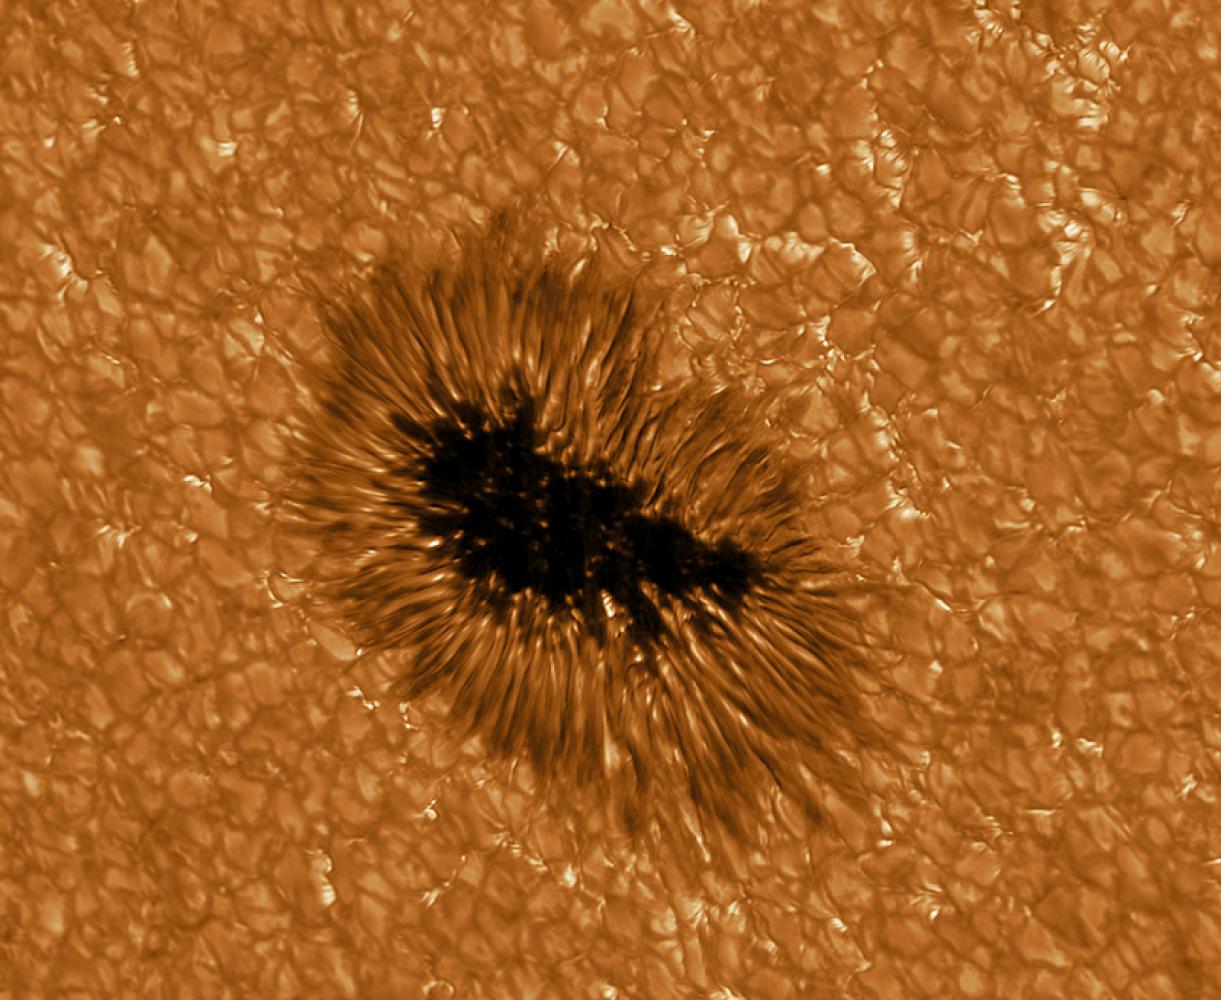 Sonnenkunst: Ein Sonnenfleck in höchster Auflösung, beobachtet mit dem Gregor Teleskop bei einer Wellenlänge von 430 nm